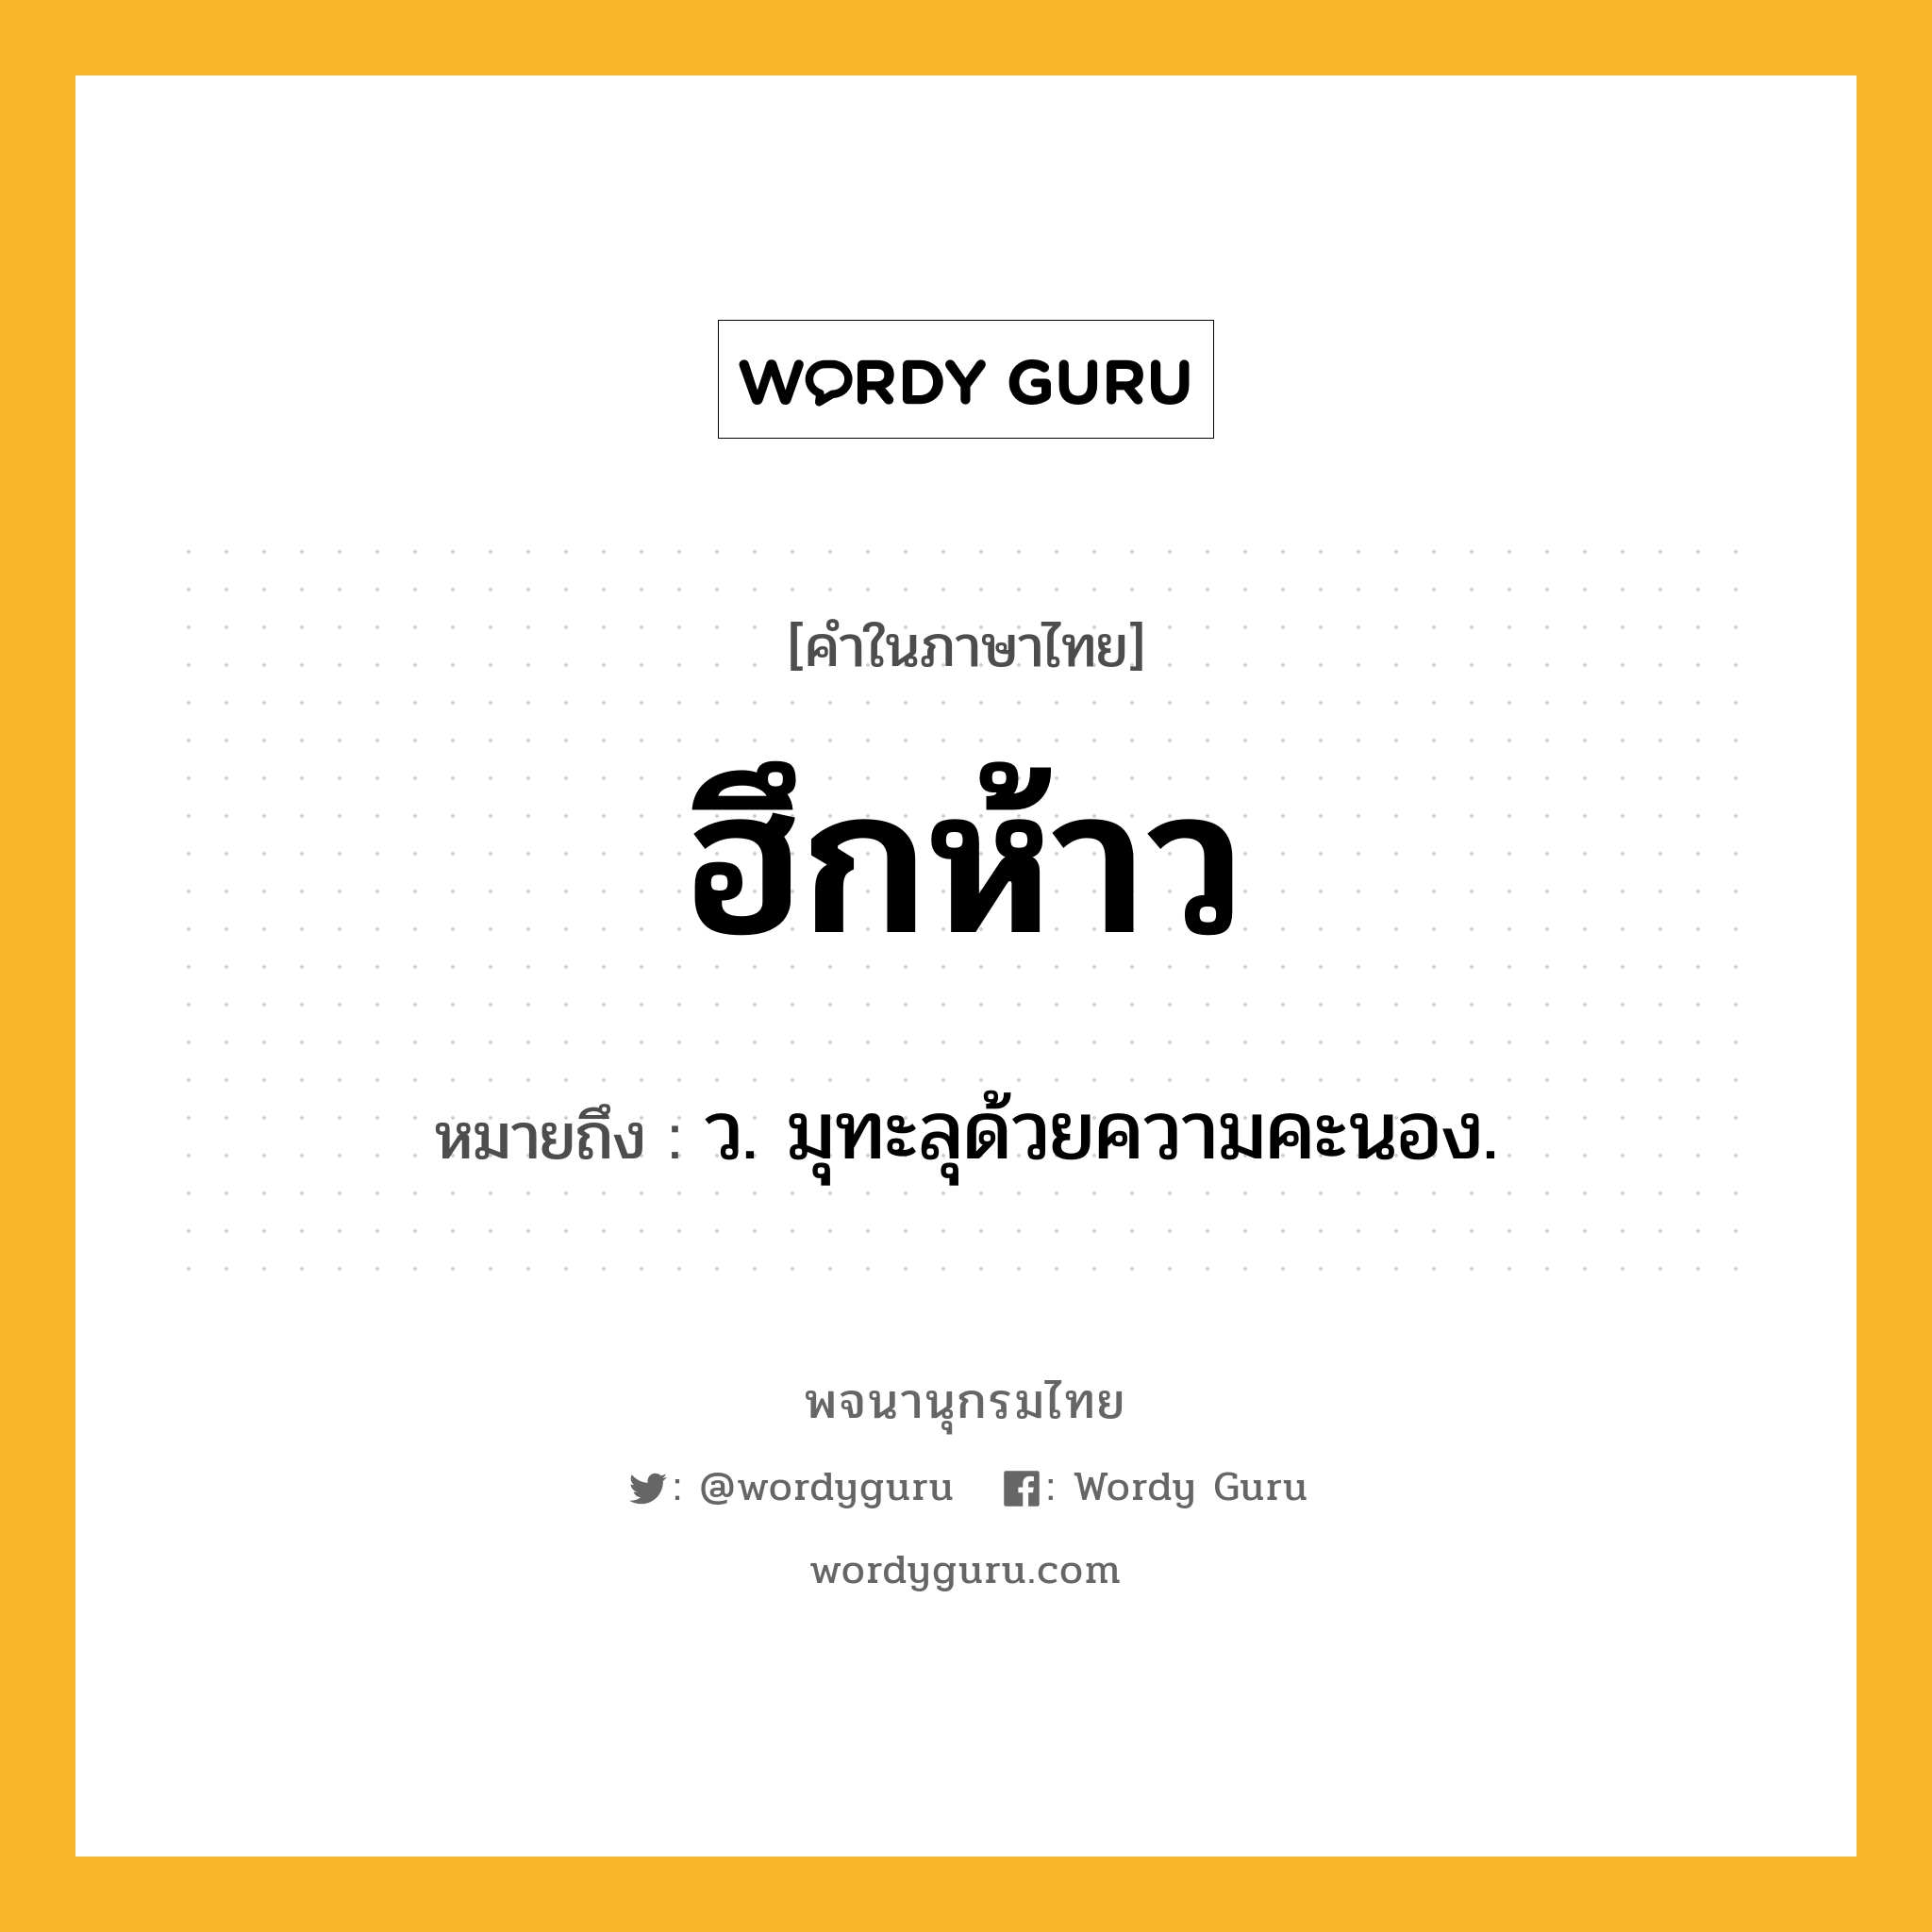 ฮึกห้าว ความหมาย หมายถึงอะไร?, คำในภาษาไทย ฮึกห้าว หมายถึง ว. มุทะลุด้วยความคะนอง.